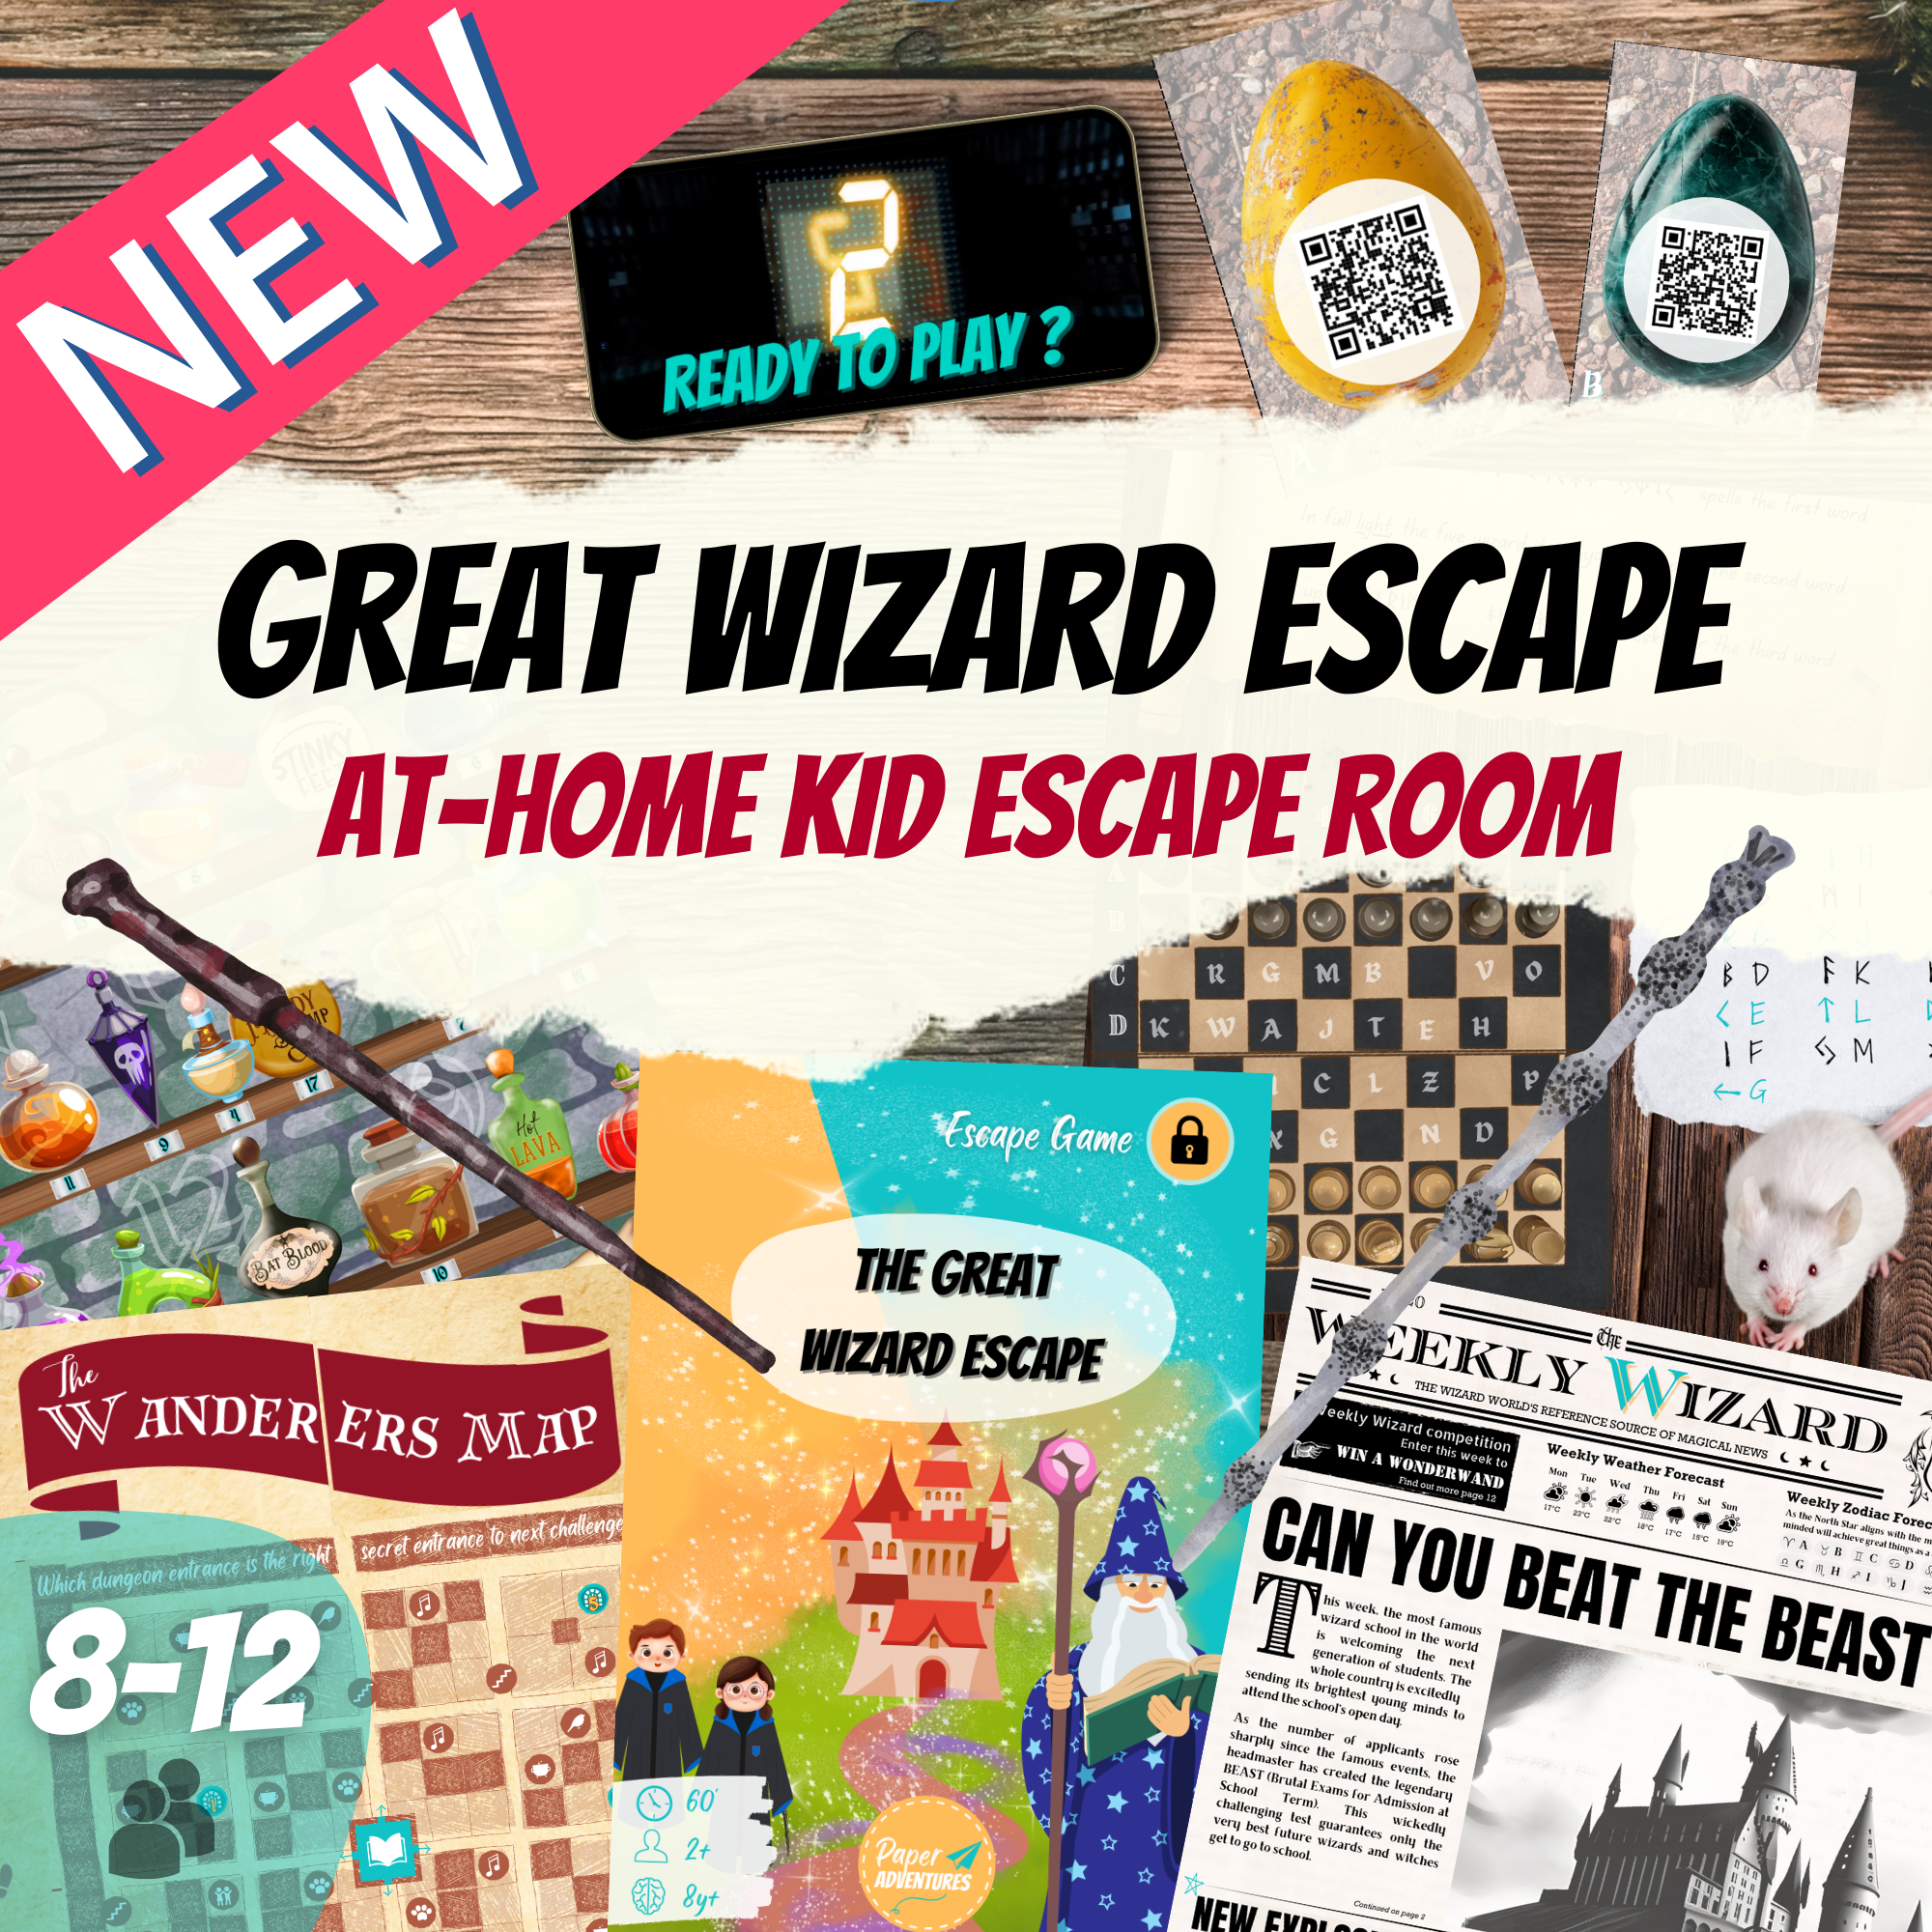 Wizard escape room game. Wizard school printable puzzle game